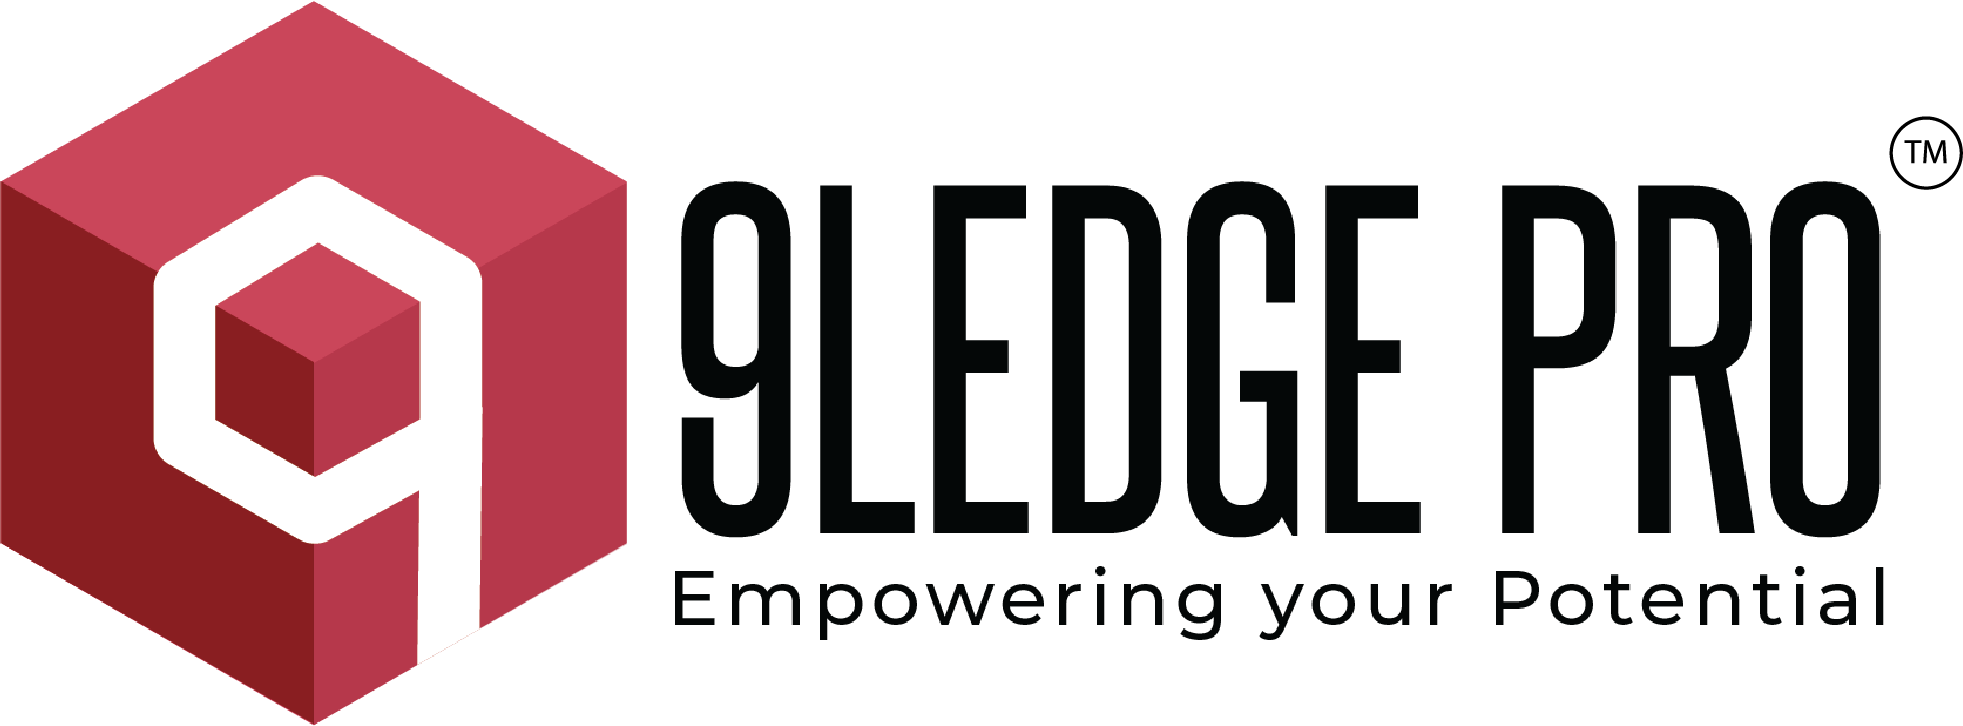 9Ledge Pro